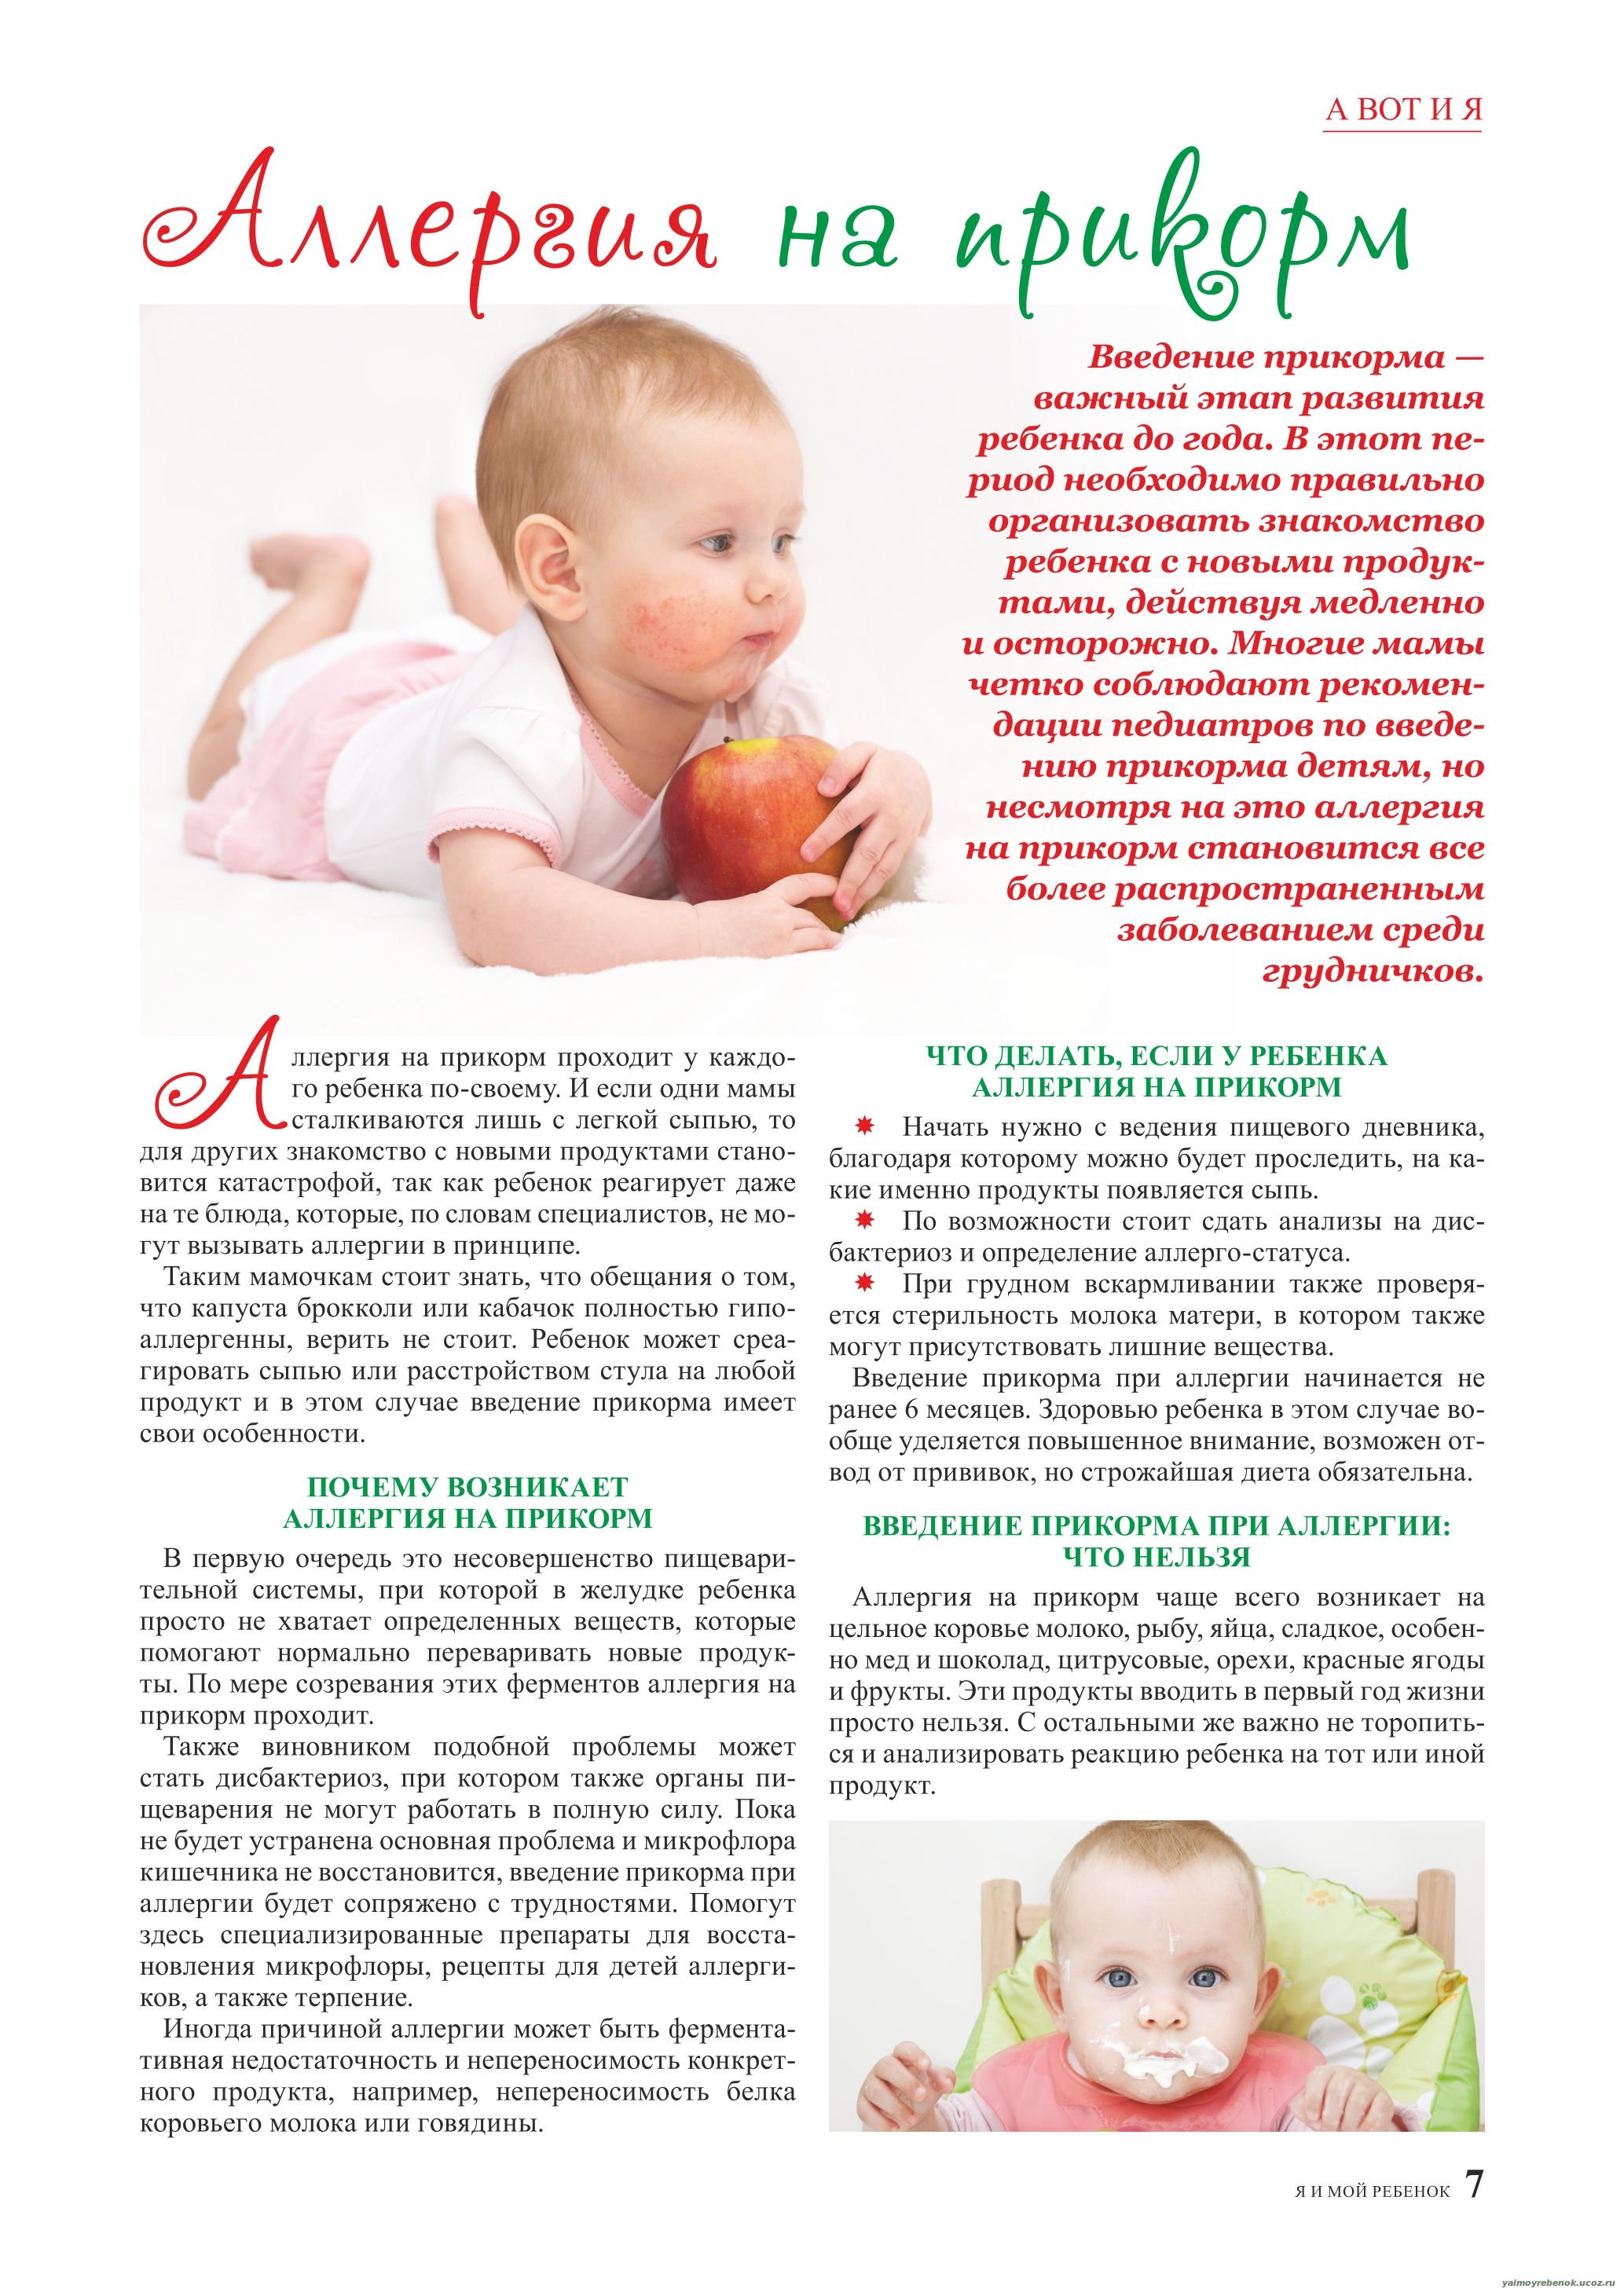 Новорожденный запор при грудном вскармливании что делать. Аллергия до года прикорм. Запоры у грудничка при грудном вскармливании при введении прикорма. Прикорм ребенка до 1 года с аллергией. Запор у новорожденного при введении прикорма.